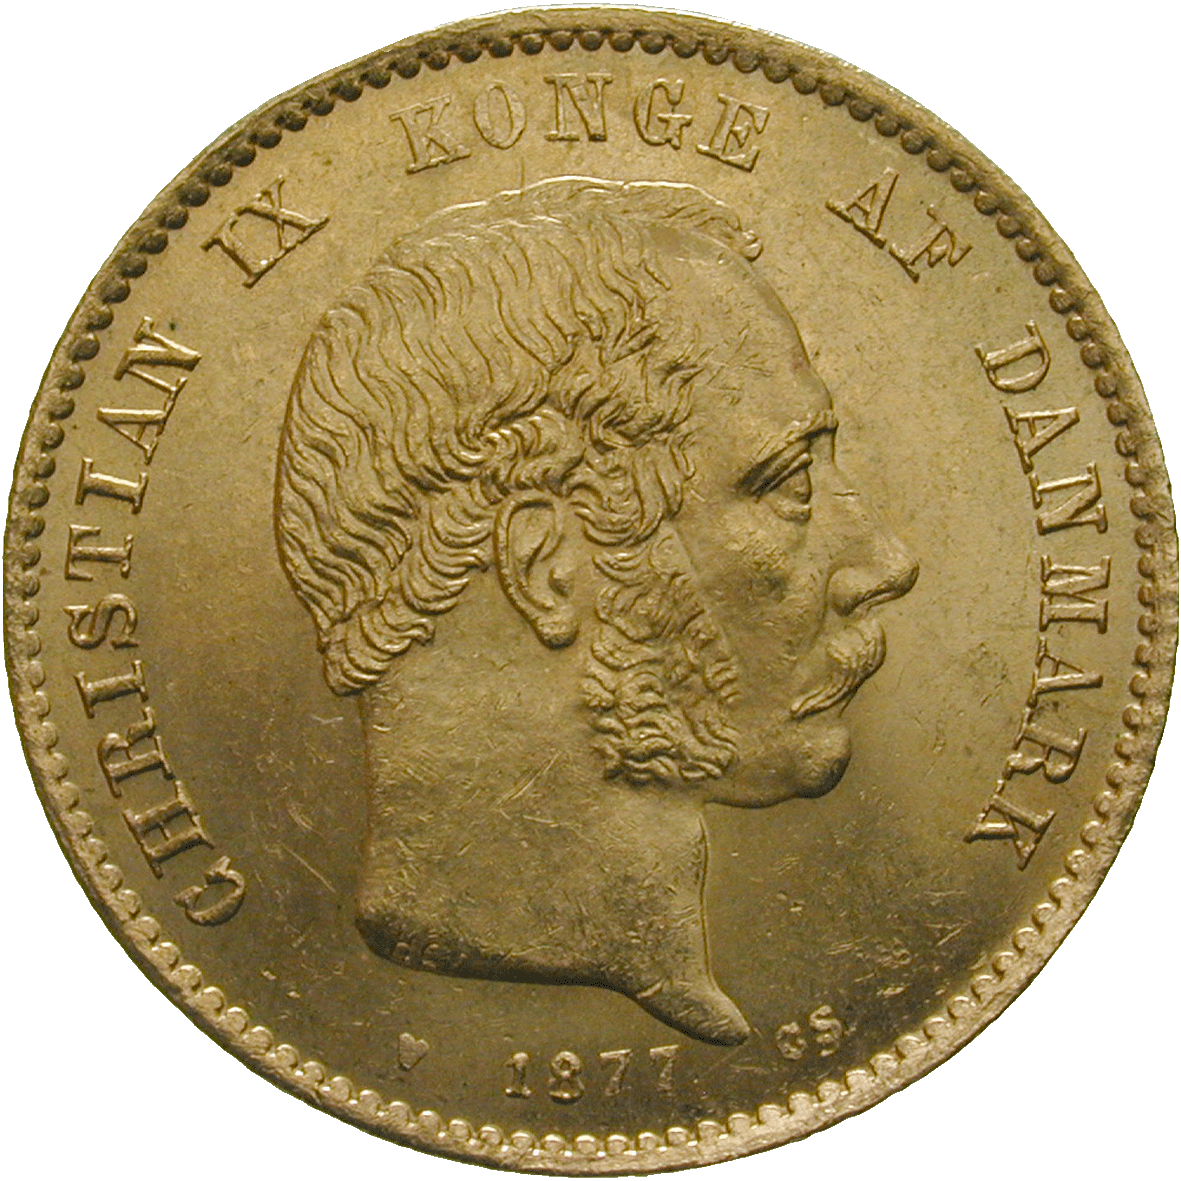 Königreich Dänemark, Christian IX., 20 Kroner 1877 (obverse)